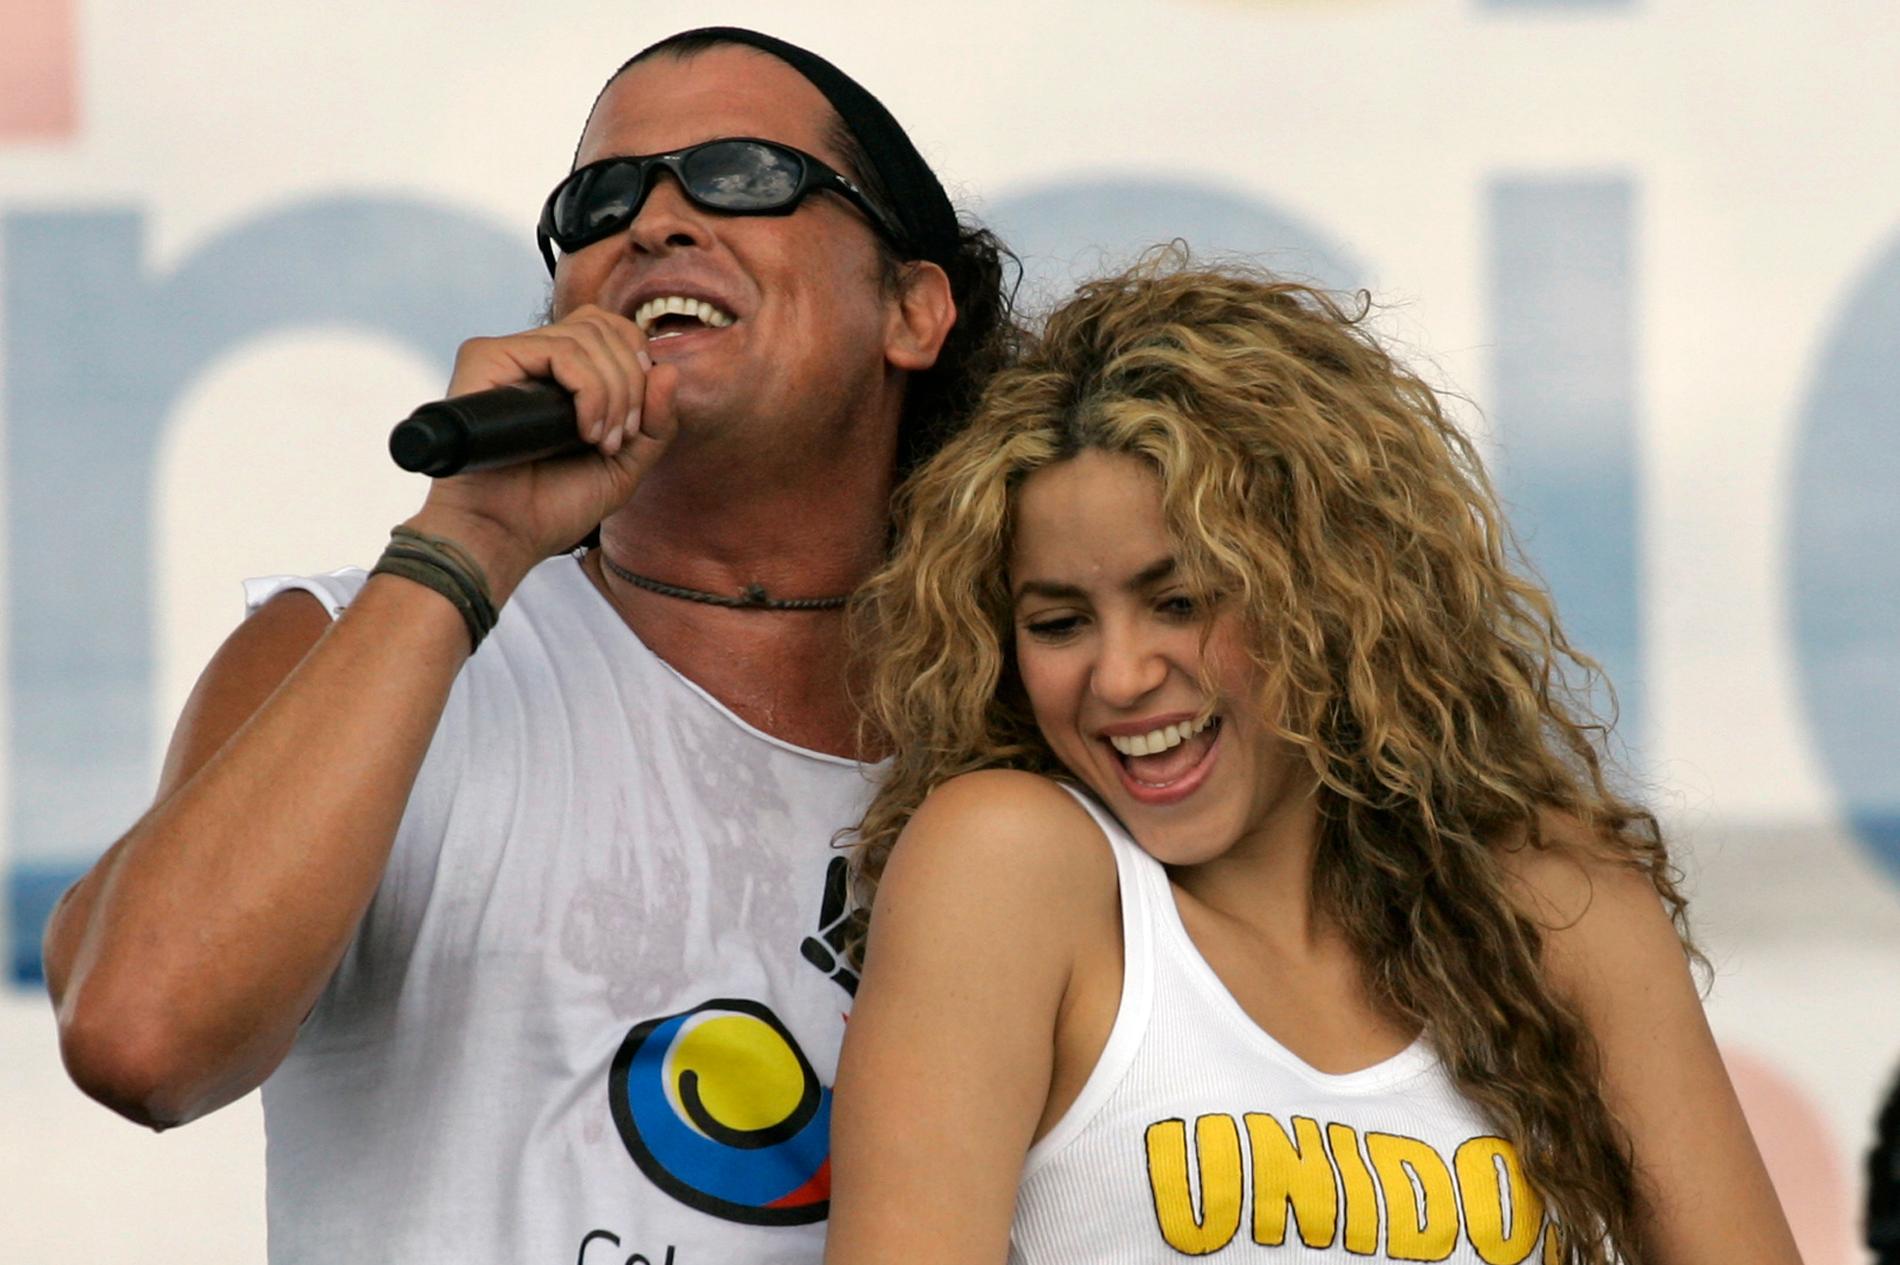 Carlos Vives och Shakira anklagas för att ha stulit delar av sin hitlåt ”La bicicleta”.